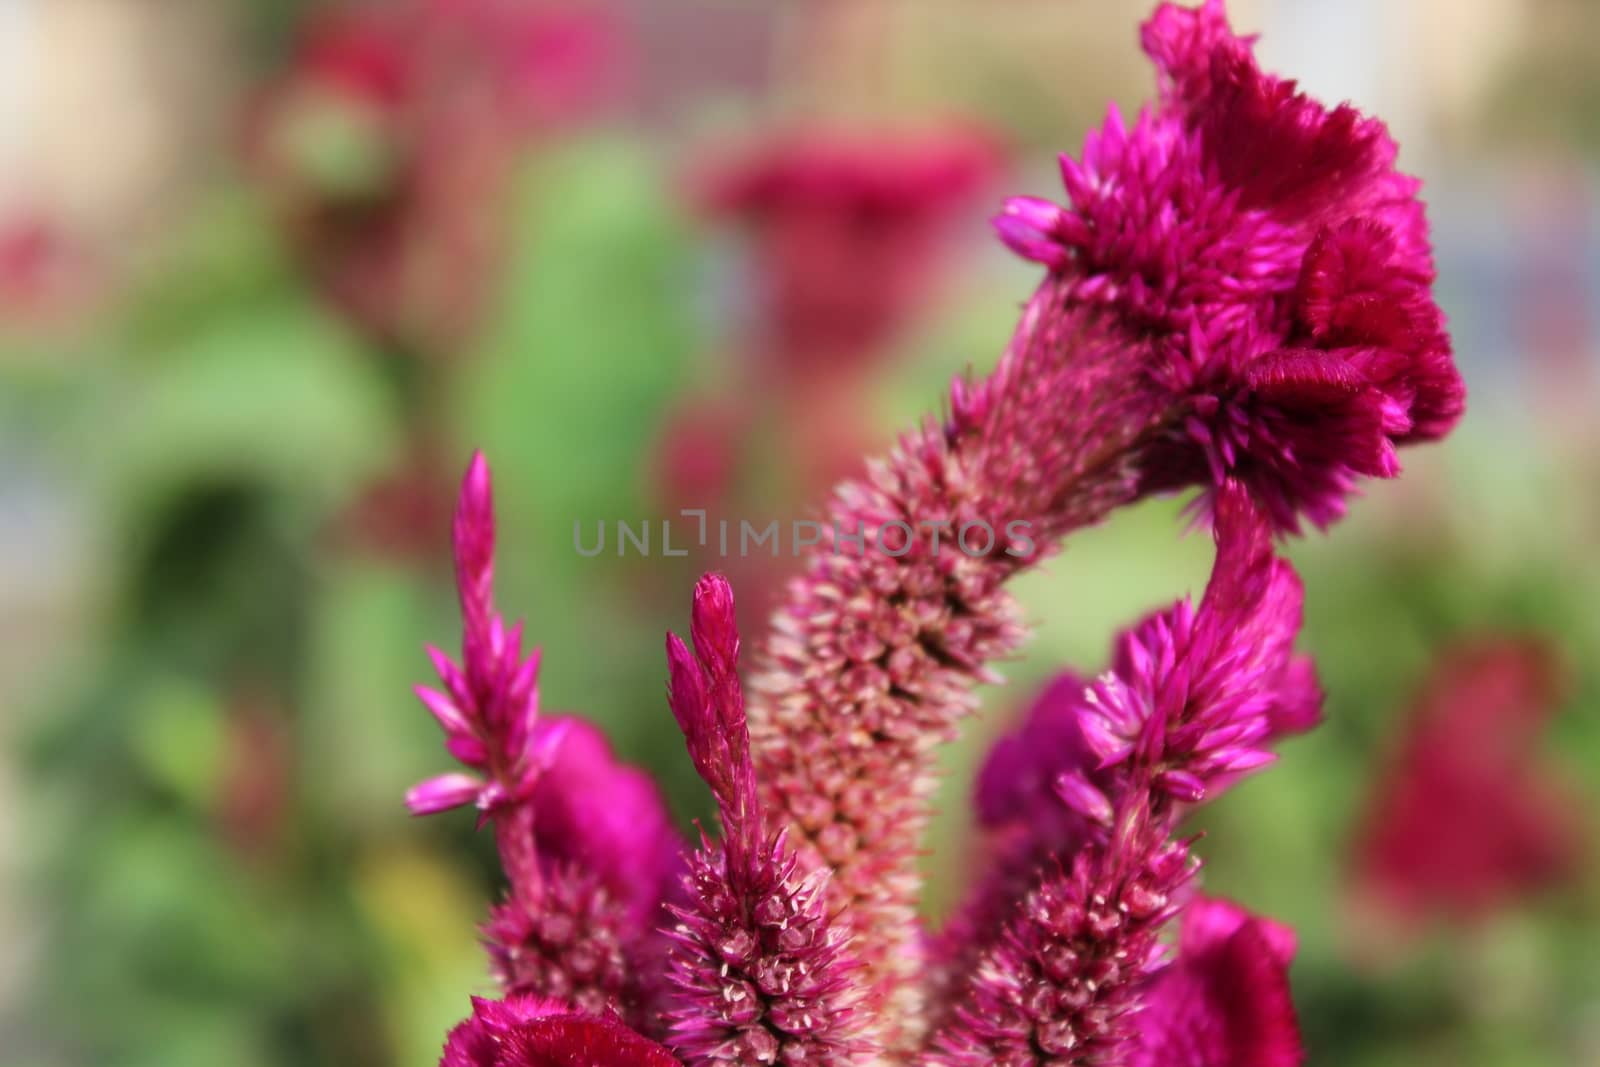 Celosia flower by nurjan100